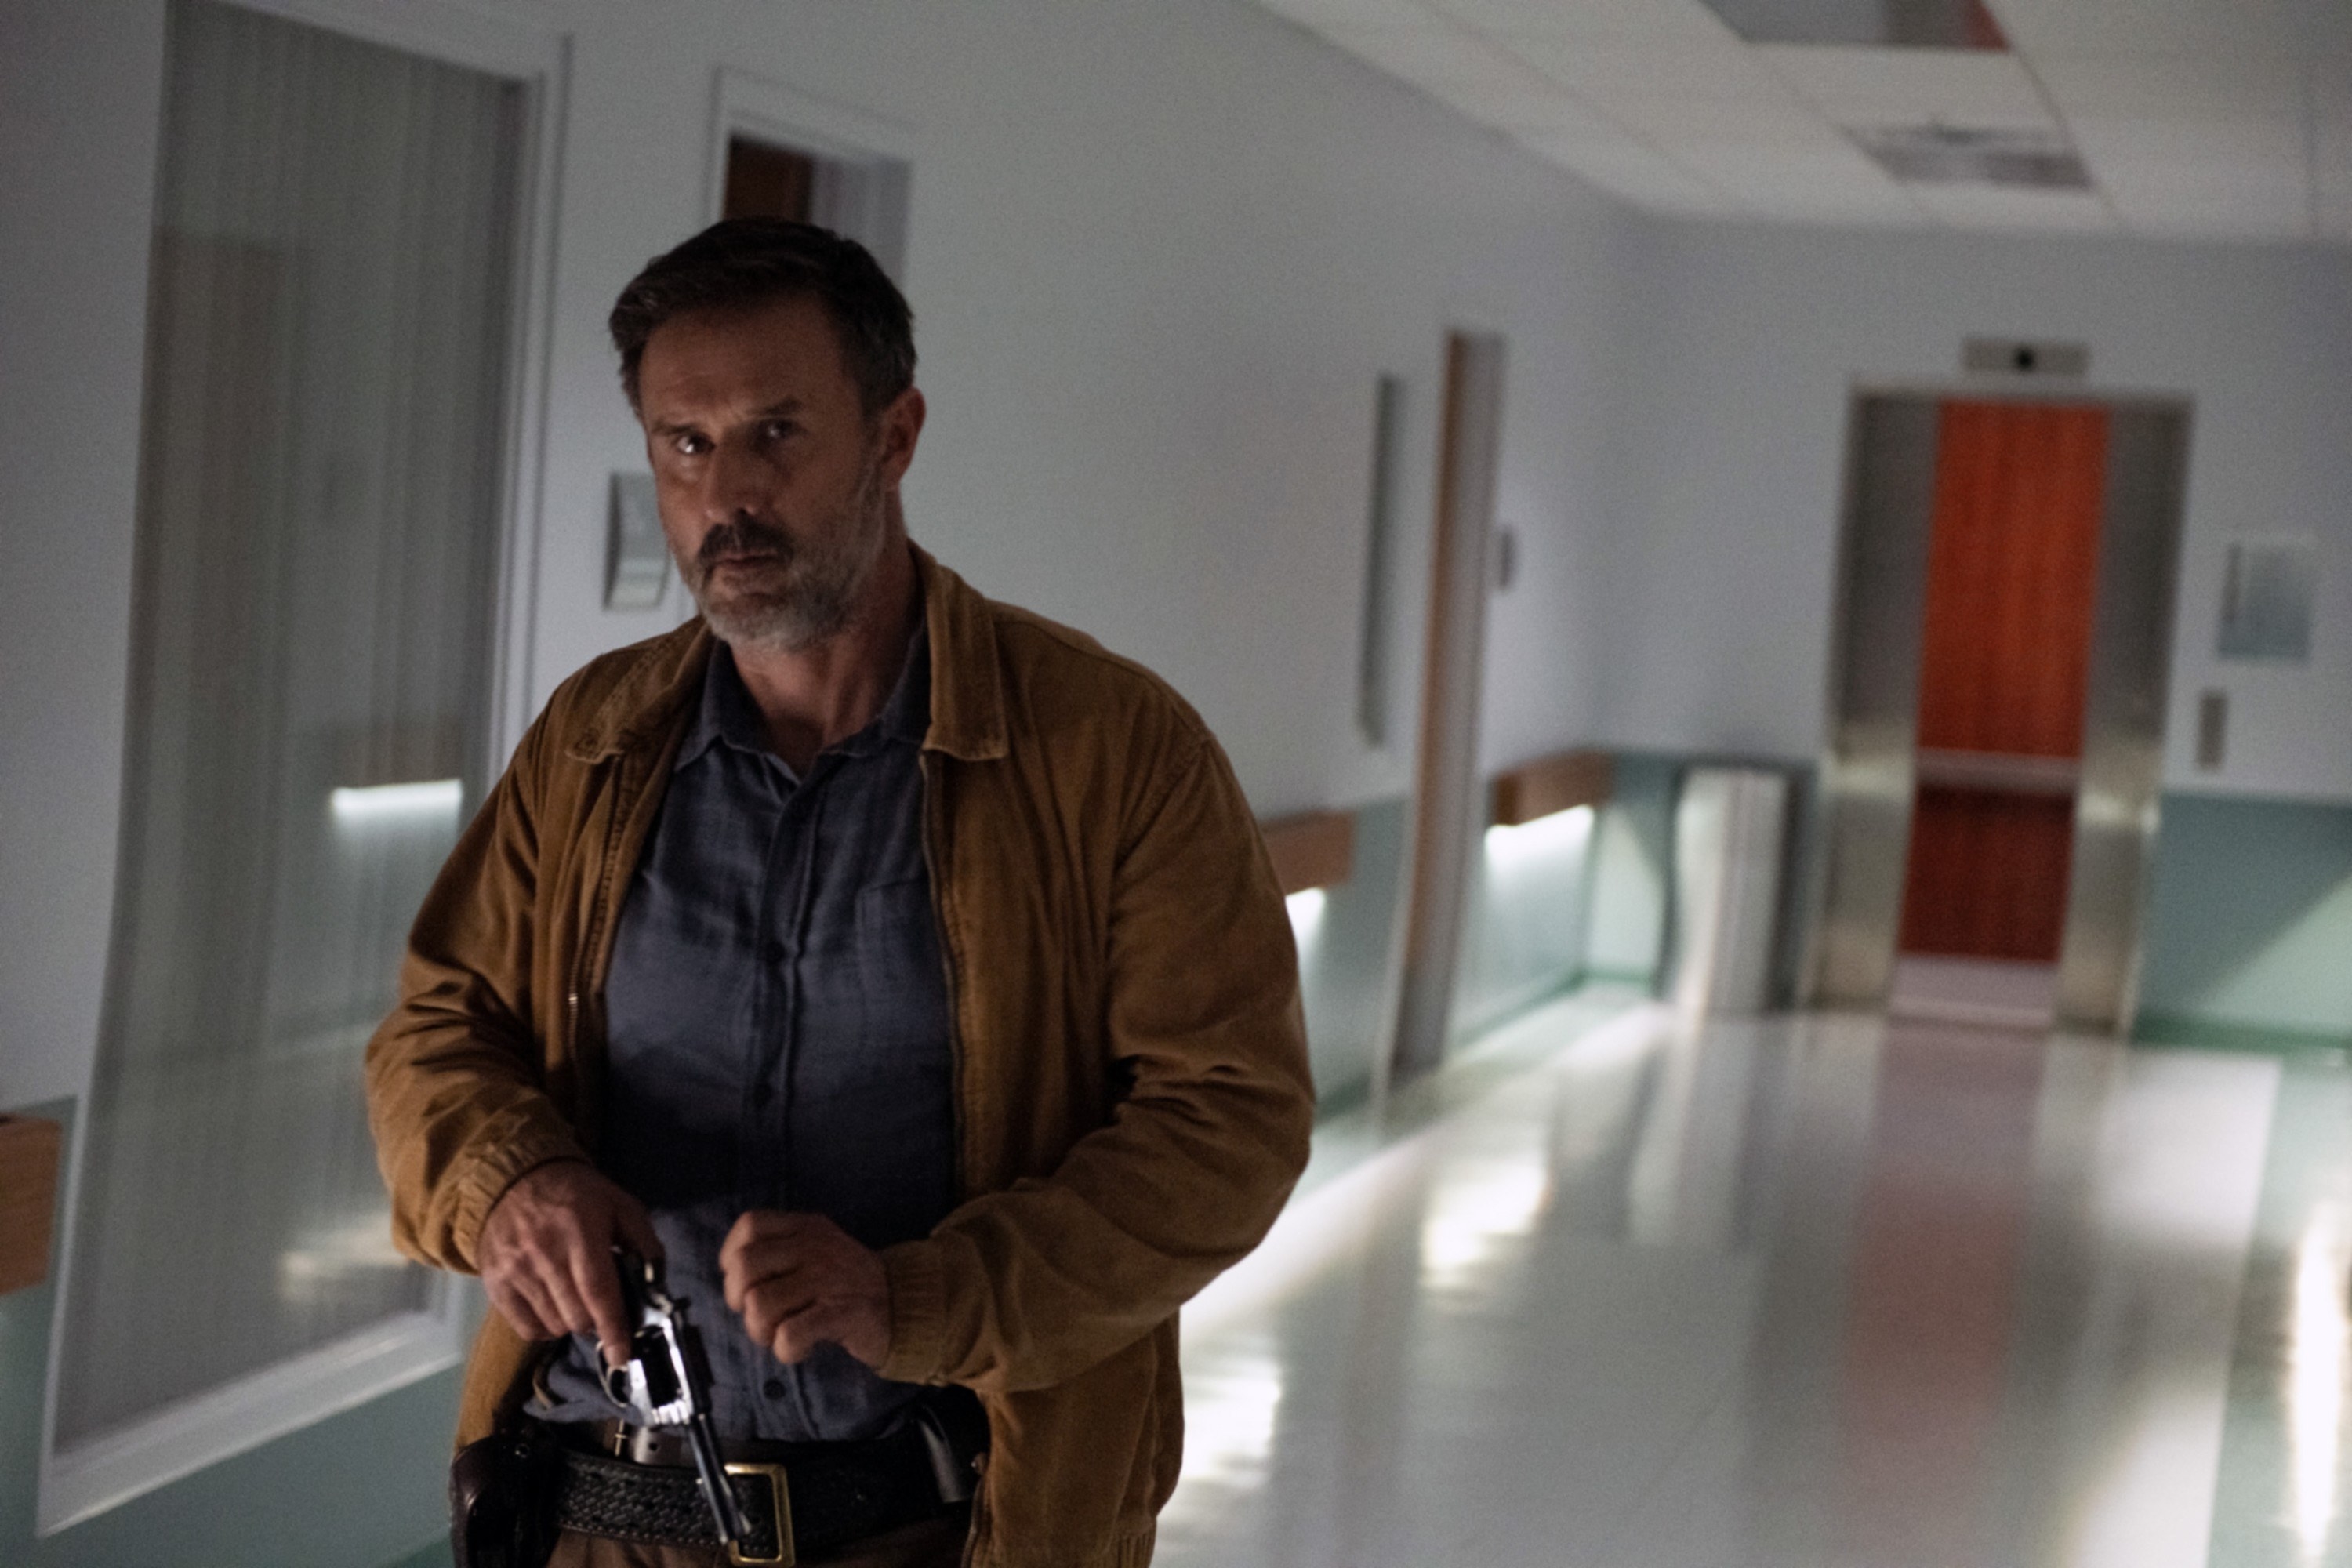 David Arquette walks down a hospital corridor with a gun